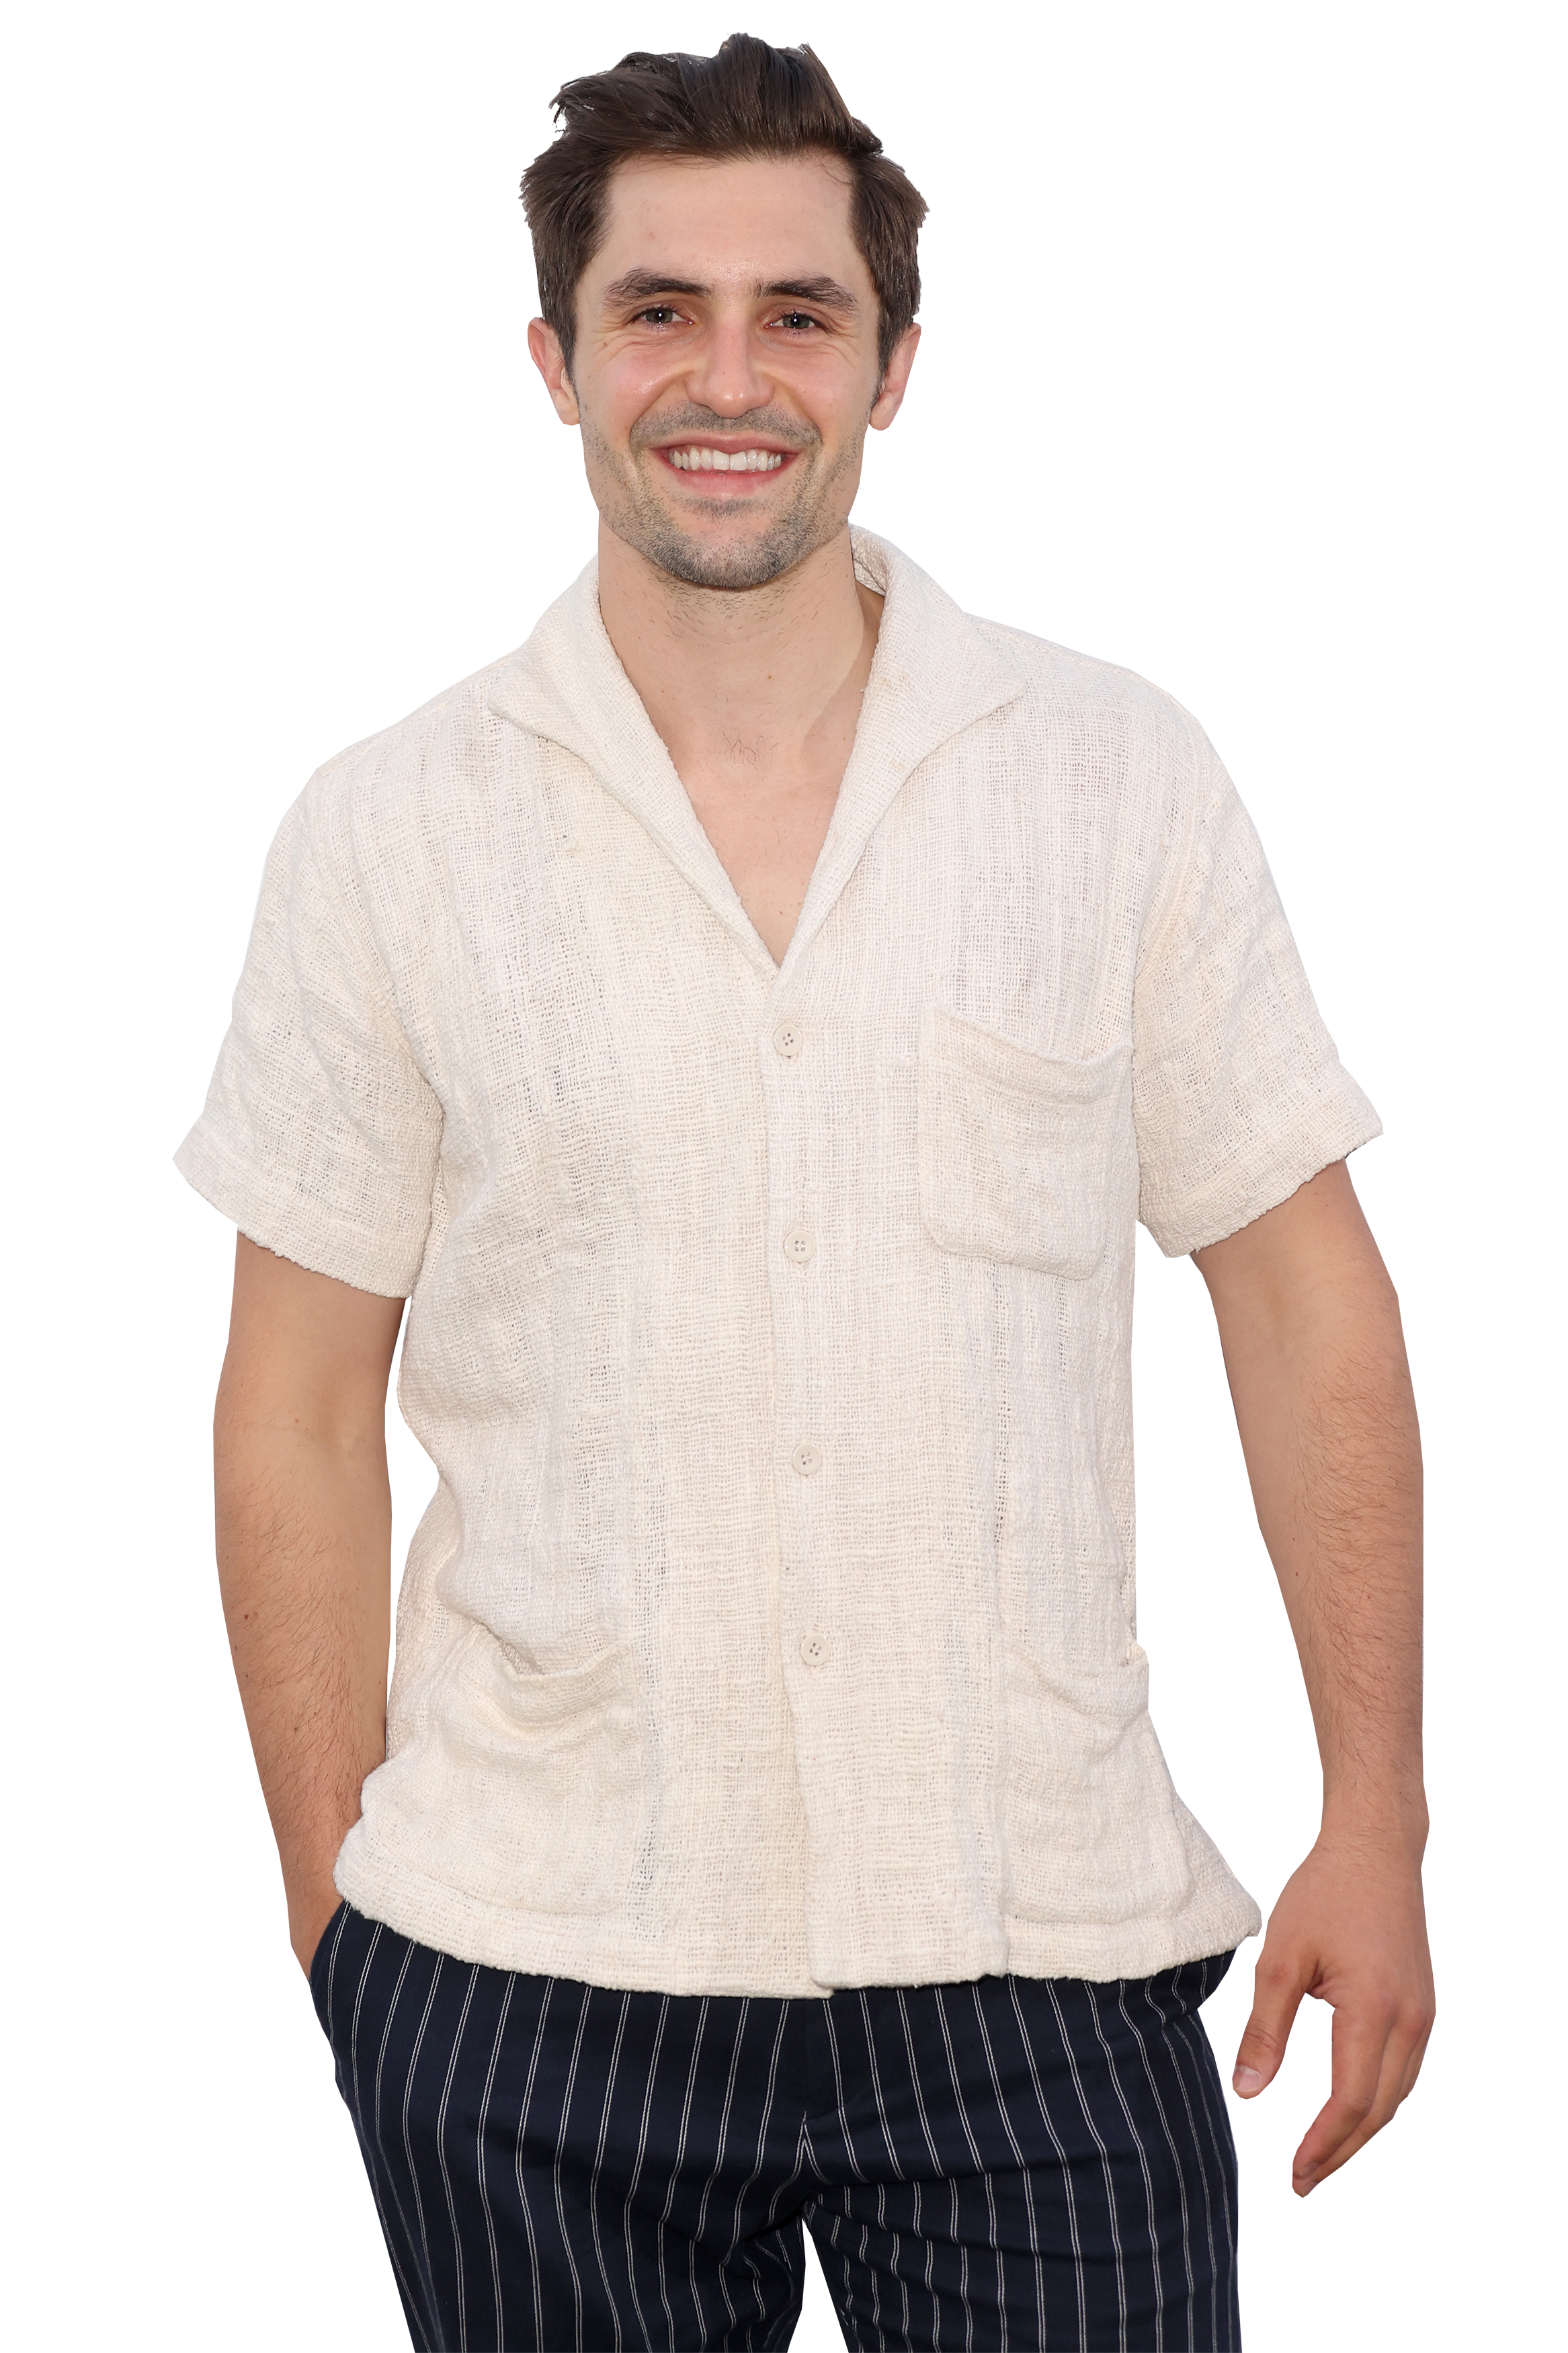 Lucky Brand Men's Short Sleeve Linen Button Up Shirt, Bright White, Medium  